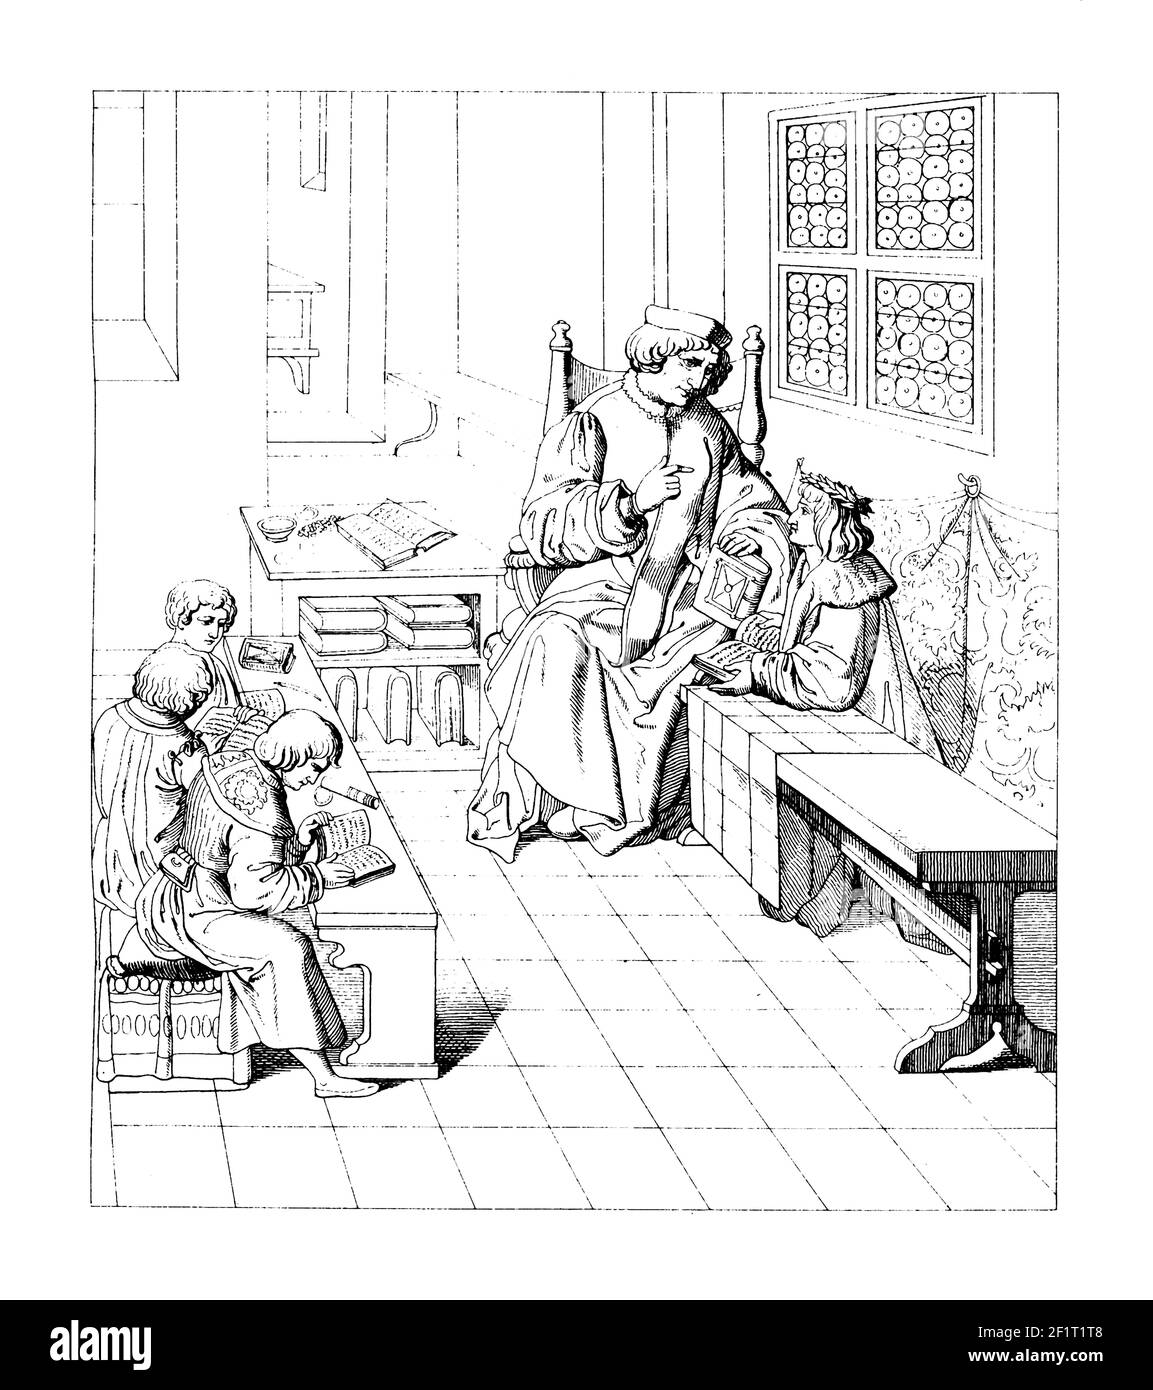 19th-century engraving of young Maximilian's education. Illustration published in Bilder-Atlas zur Weltgeschichte nach Kunstwerken alter und neuer Zei Stock Photo